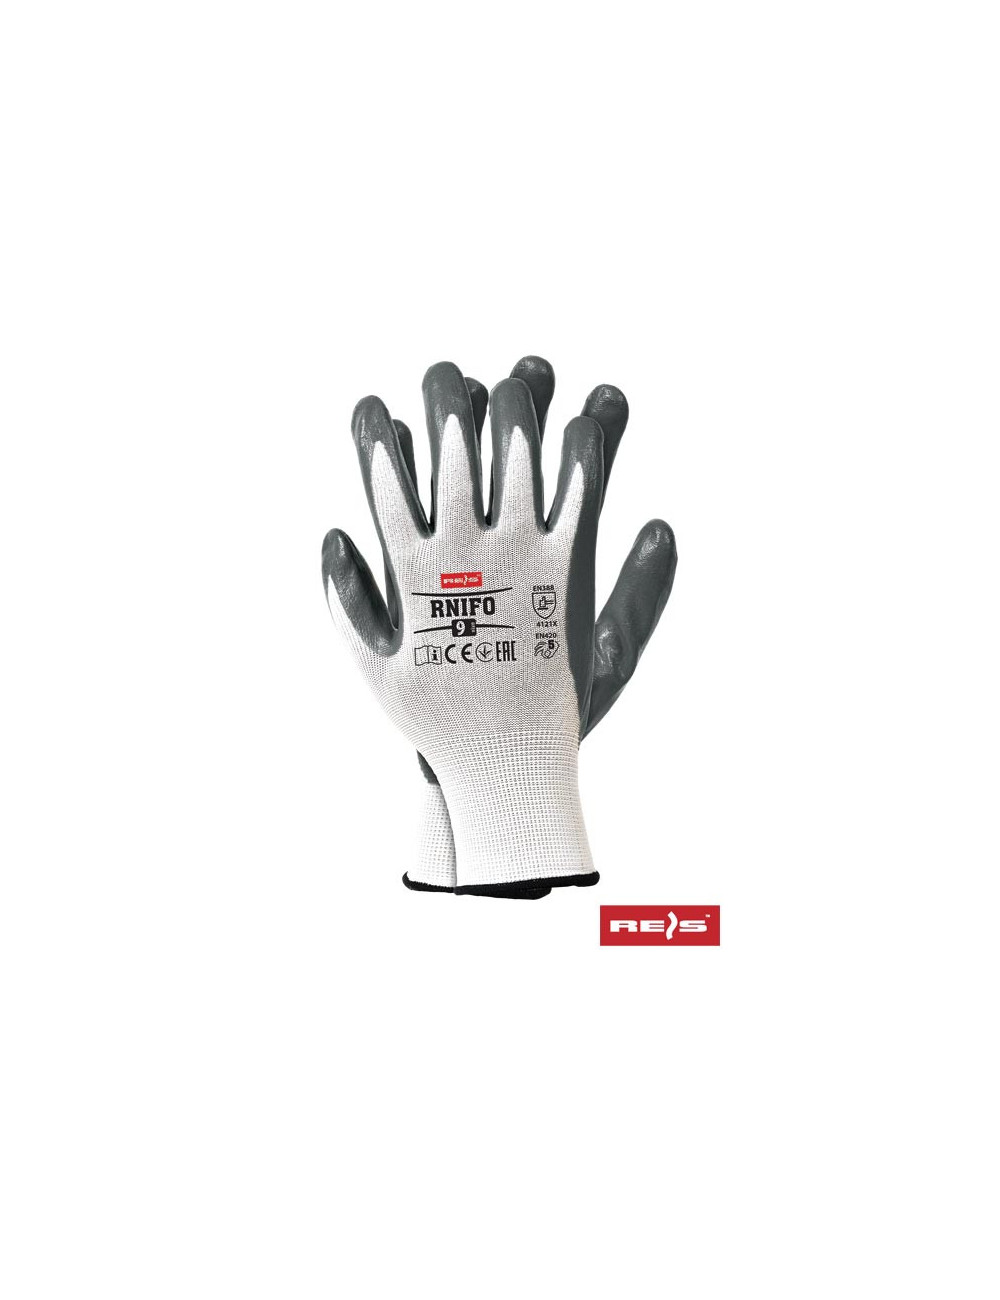 Protective gloves rnifo ws white-grey Reis